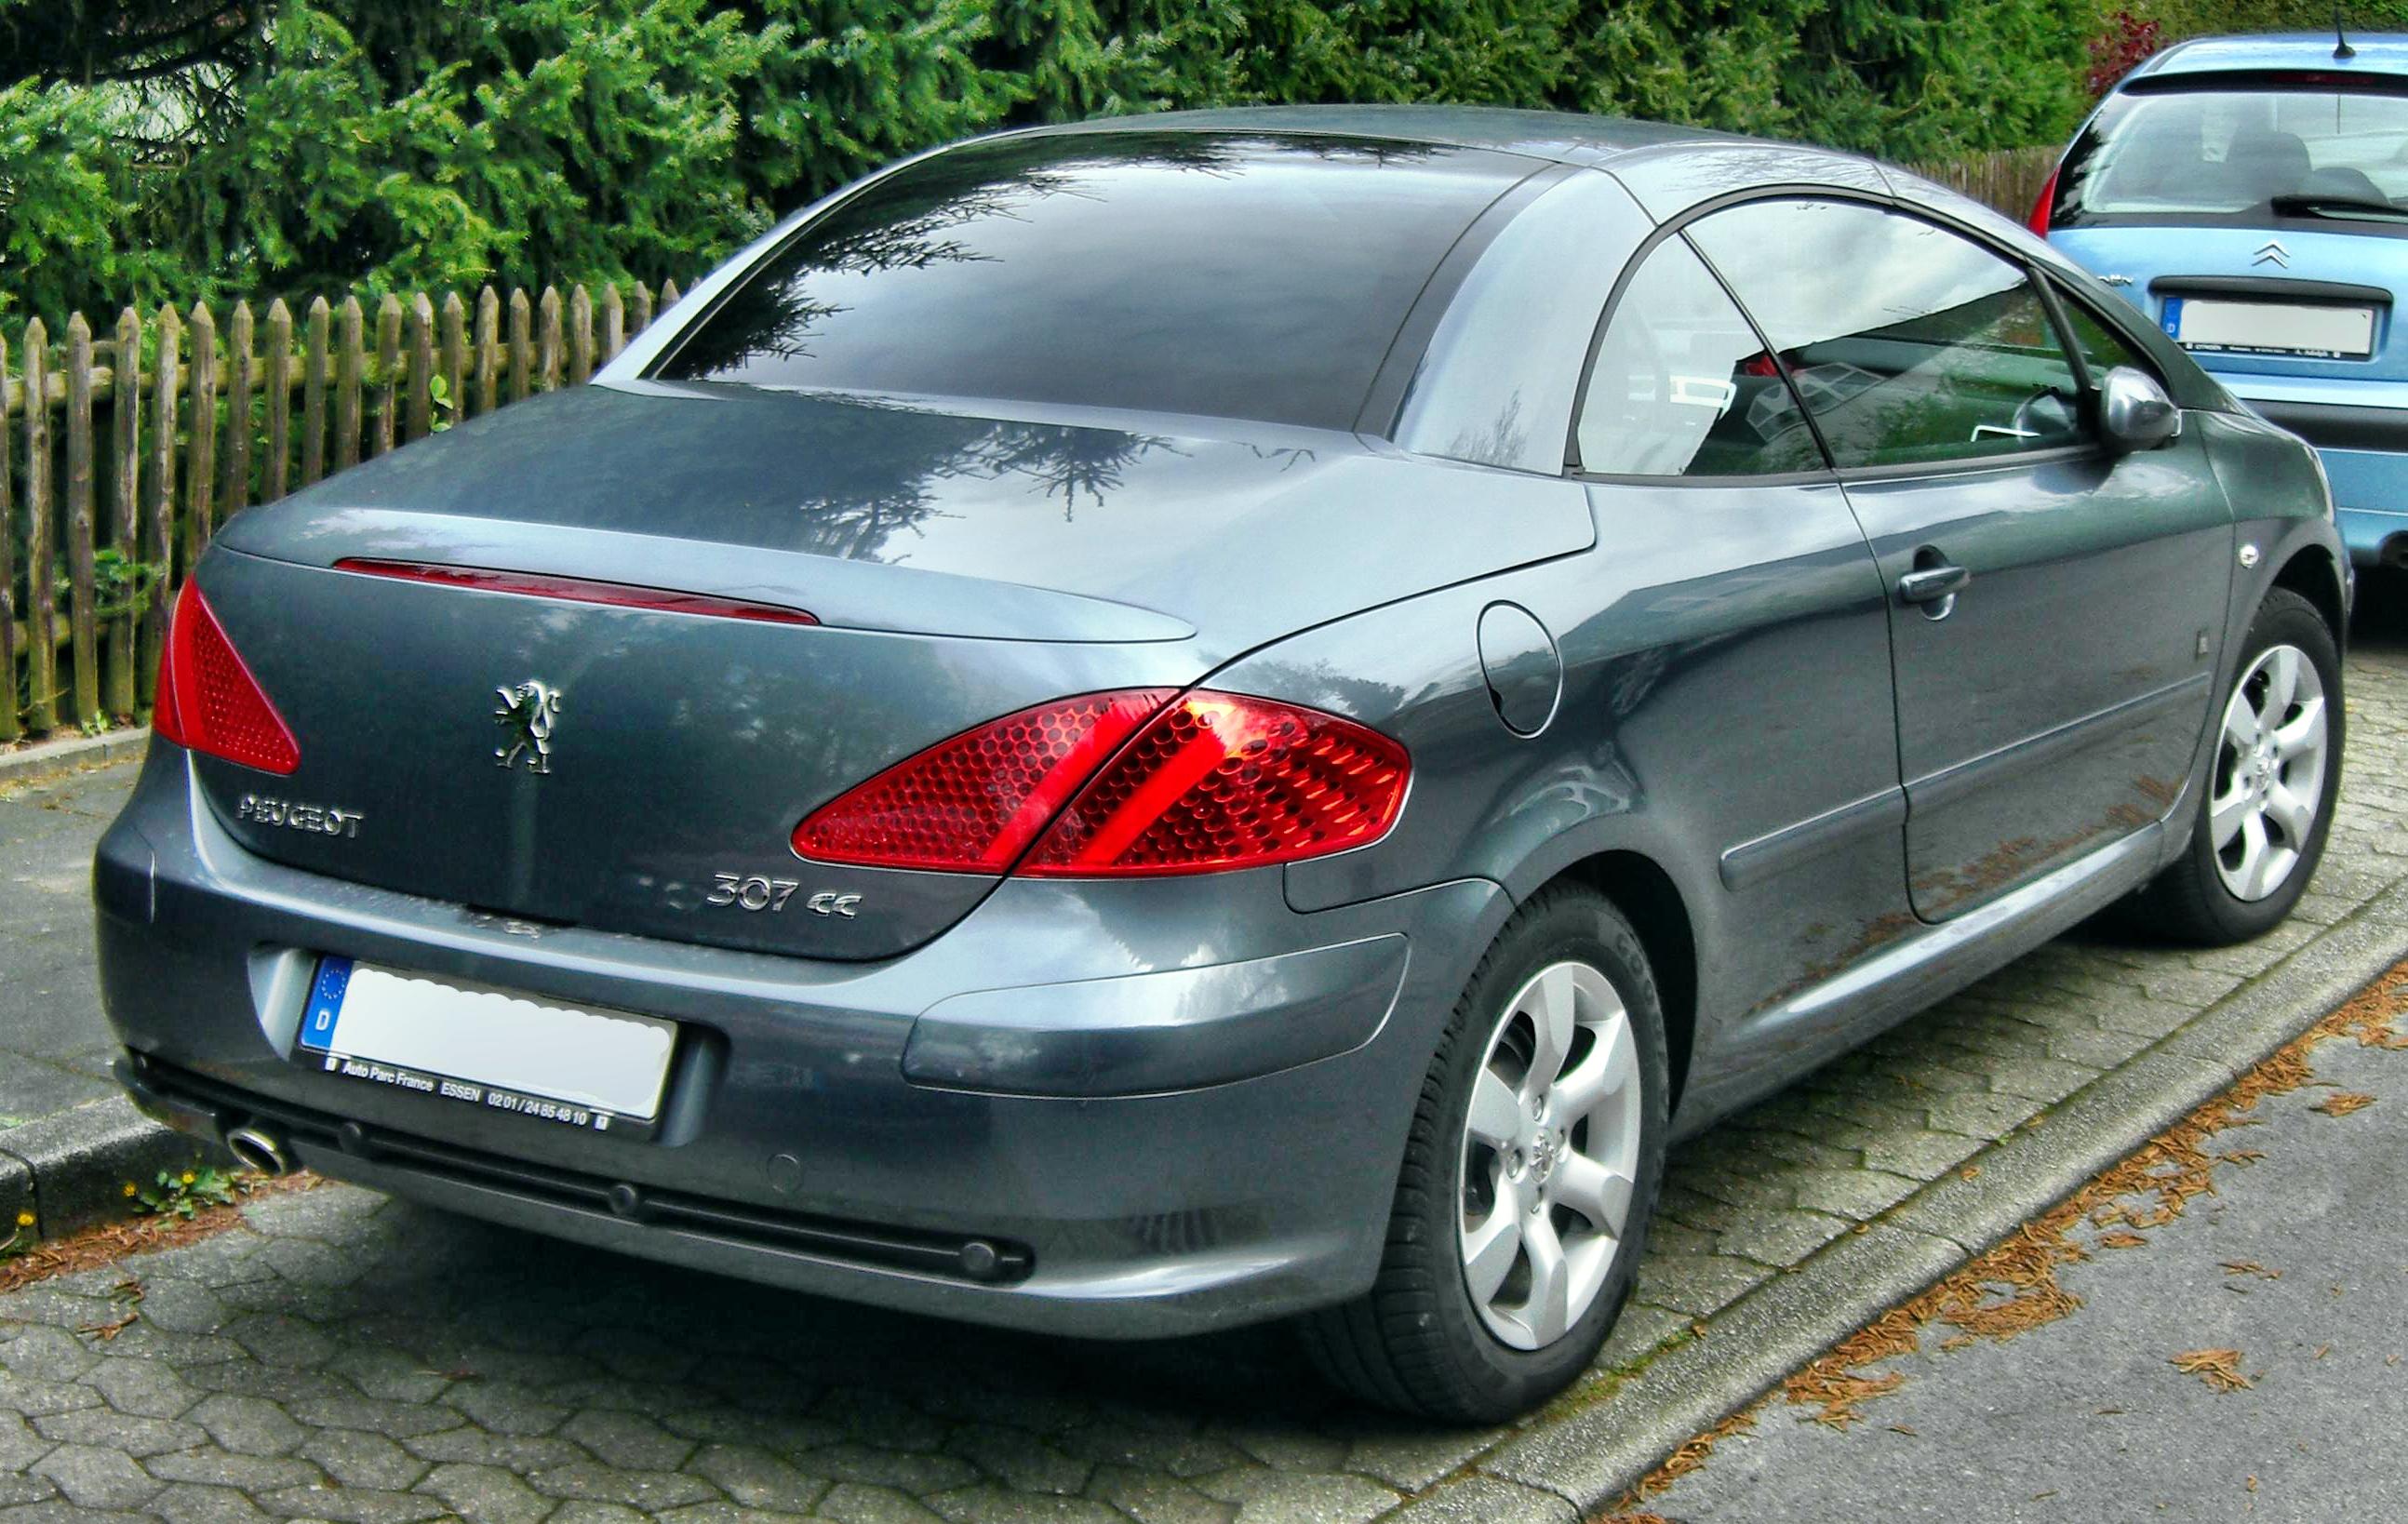 Peugeot_307_CC_Facelift_rear.jpg